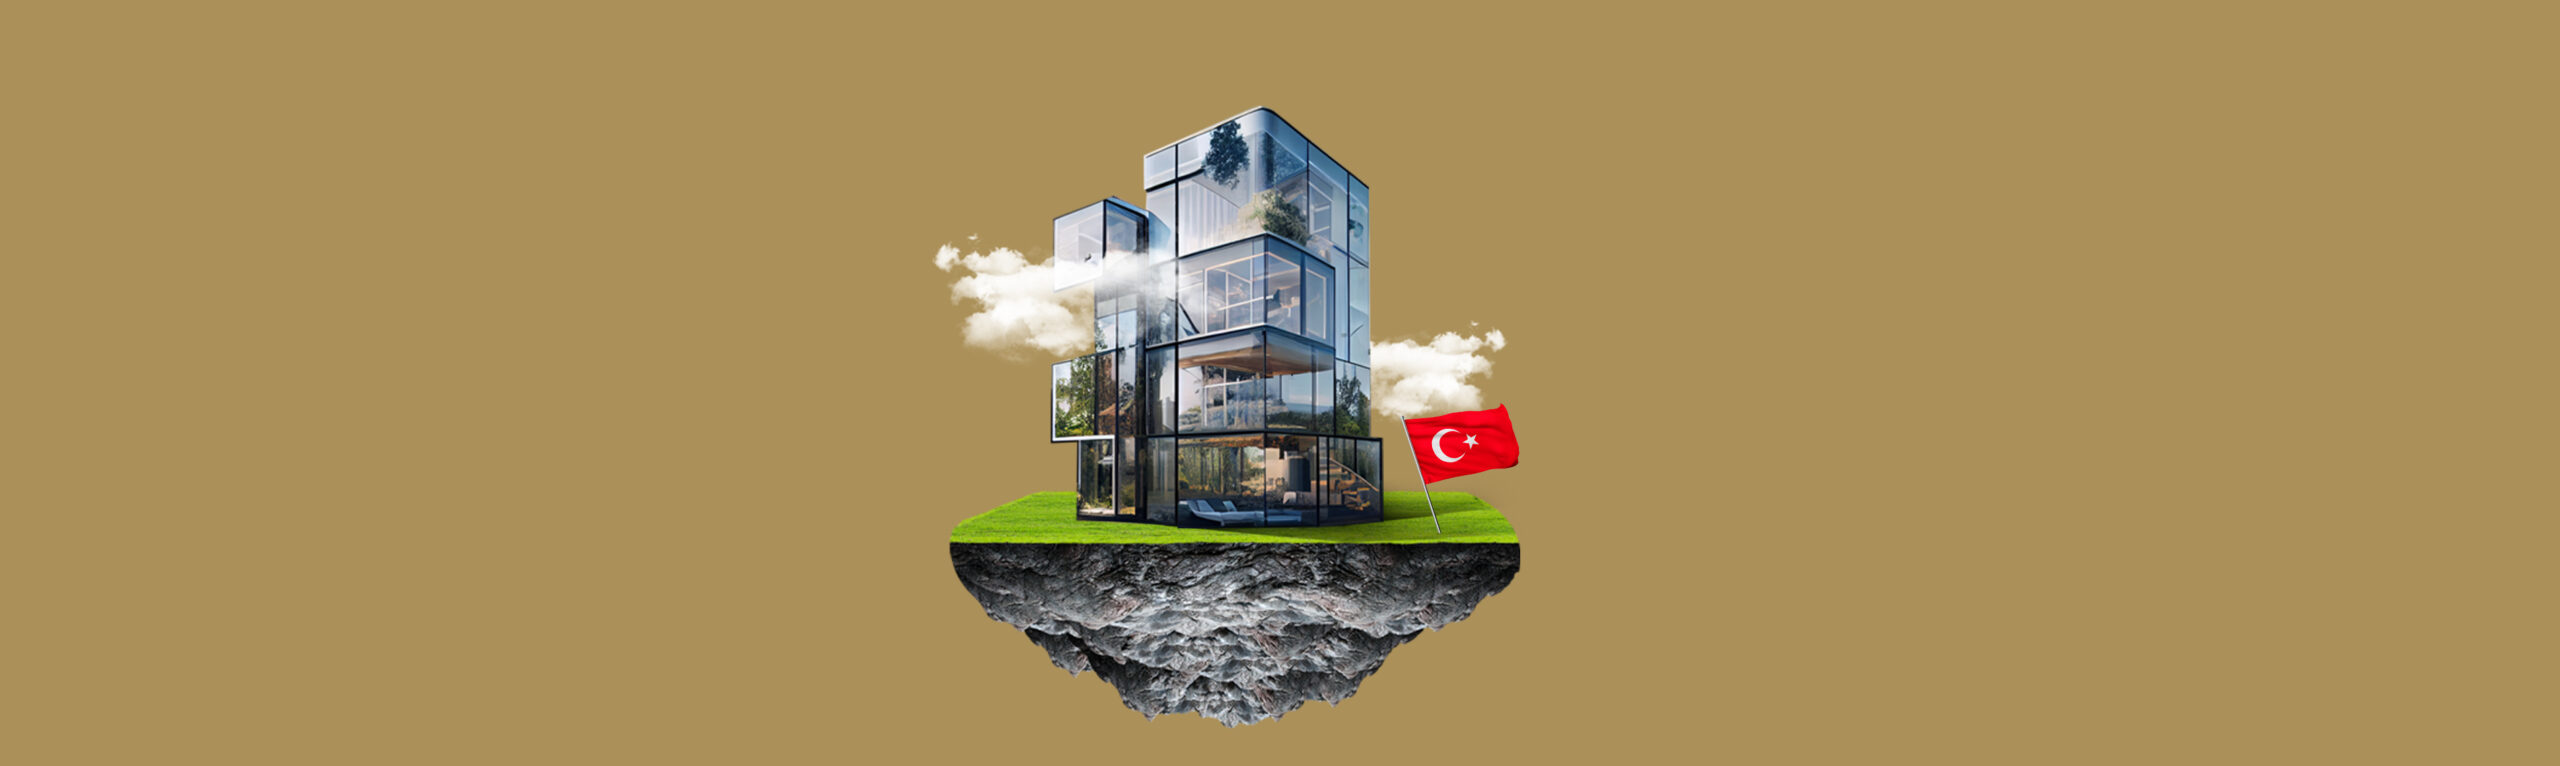 شهدت العقارات في تركيا نموًا وتطورًا ملحوظًا في السنوات الأخيرة، مما يجعلها خيارًا جذابًا للمستثمرين المحليين والدوليين.